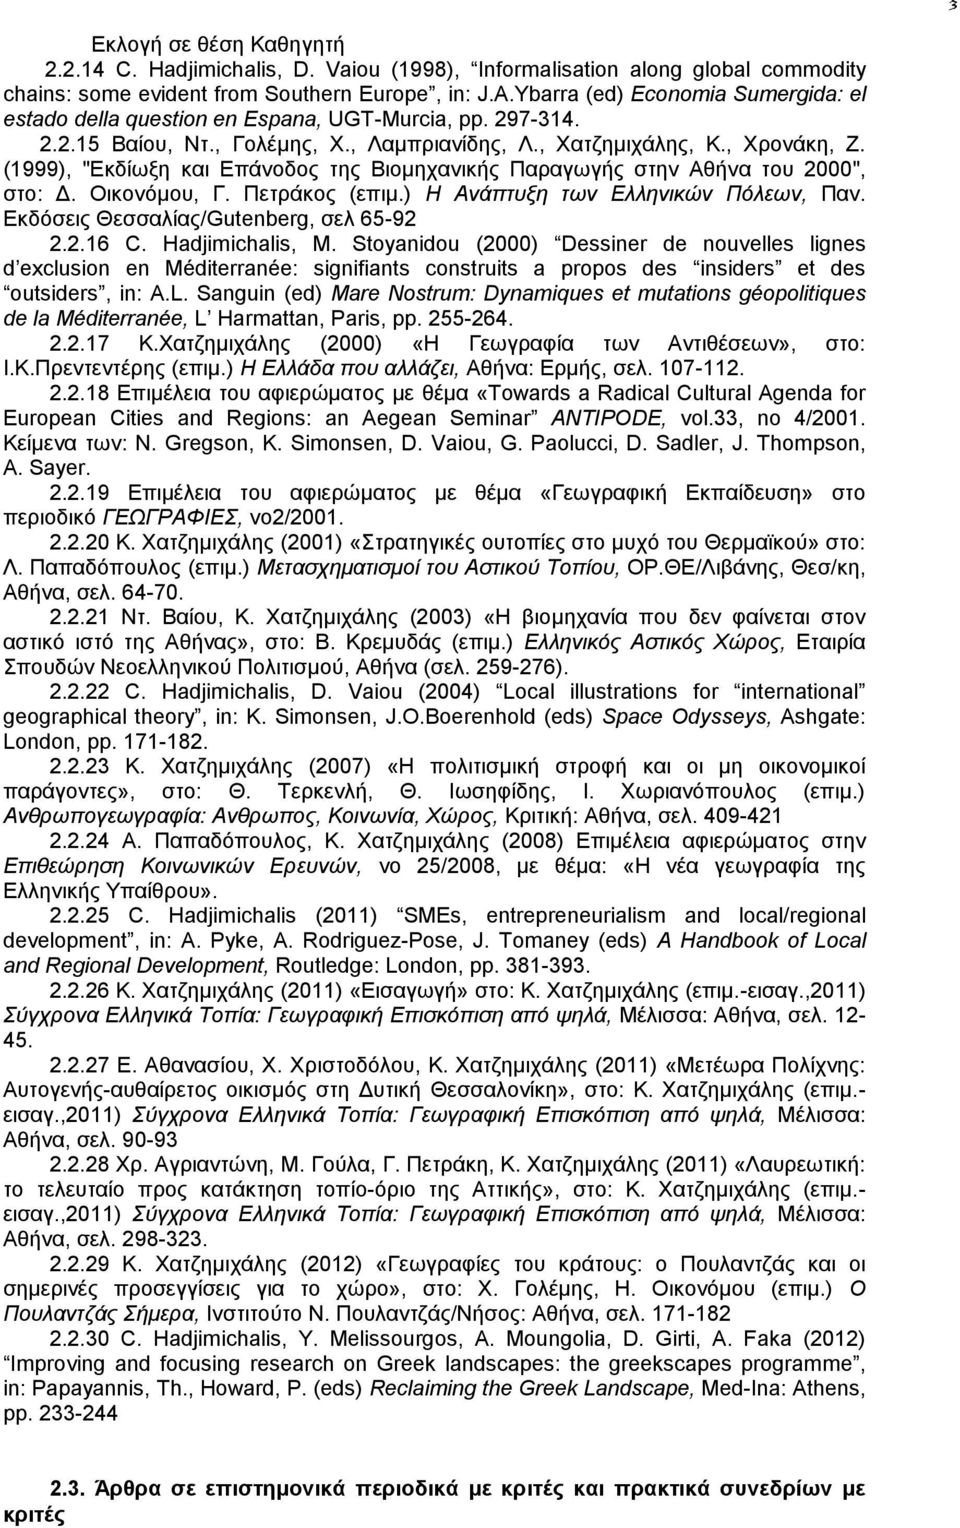 (1999), "Εκδίωξη και Επάνοδος της Βιομηχανικής Παραγωγής στην Αθήνα του 2000", στο: Δ. Οικονόμου, Γ. Πετράκος (επιμ.) Η Ανάπτυξη των Ελληνικών Πόλεων, Παν. Εκδόσεις Θεσσαλίας/Gutenberg, σελ 65-92 2.2.16 C.